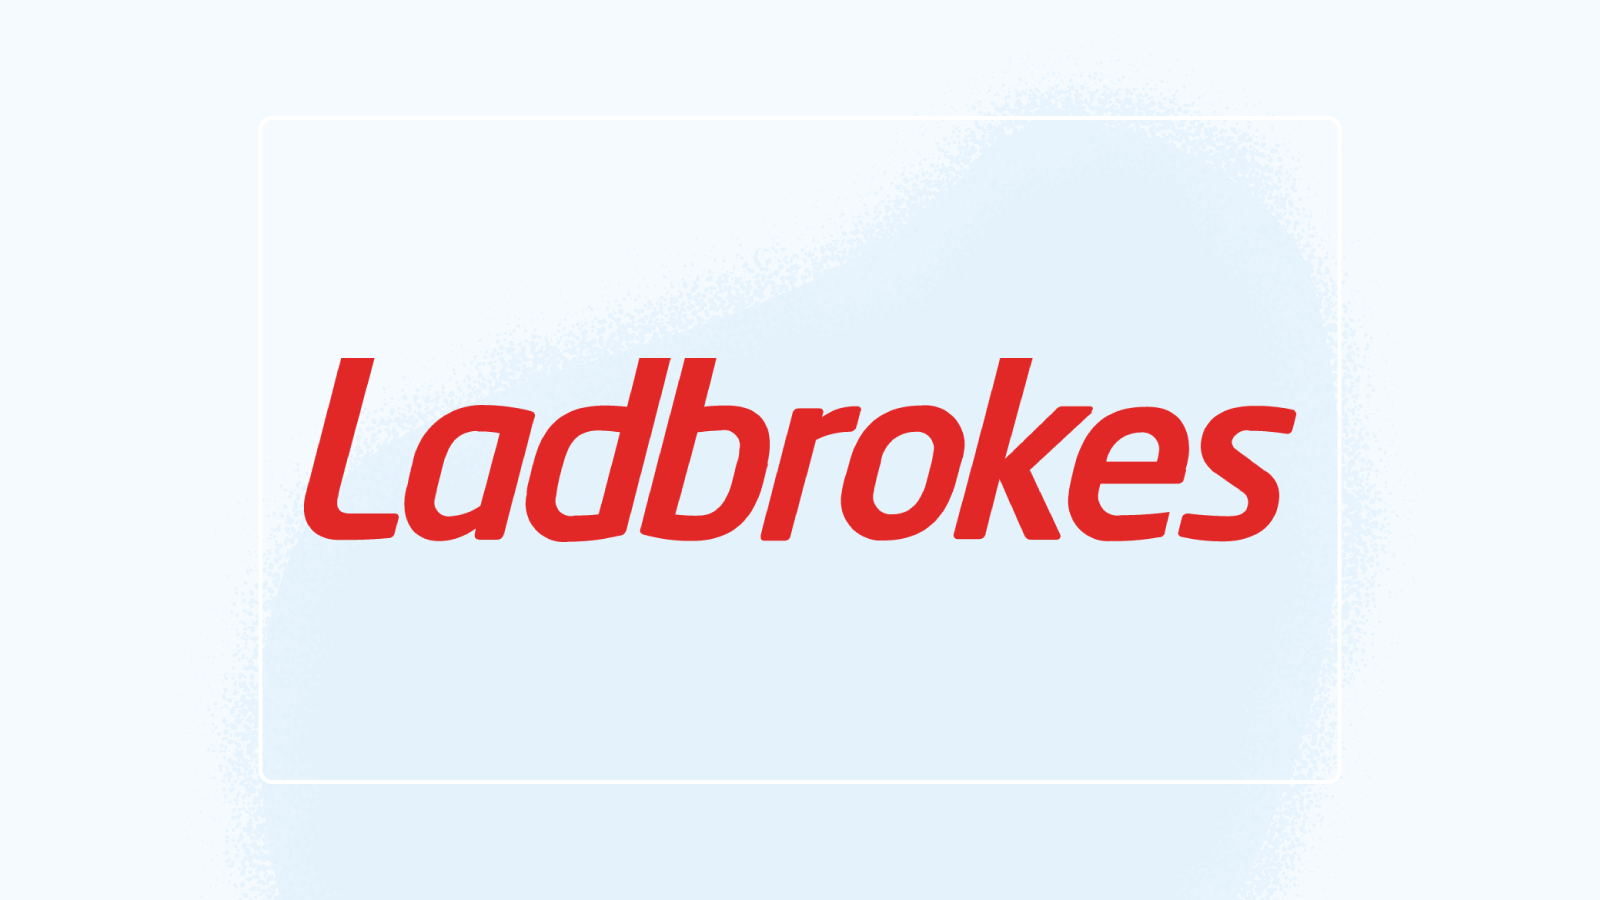 Ladbrokes’ features summarised